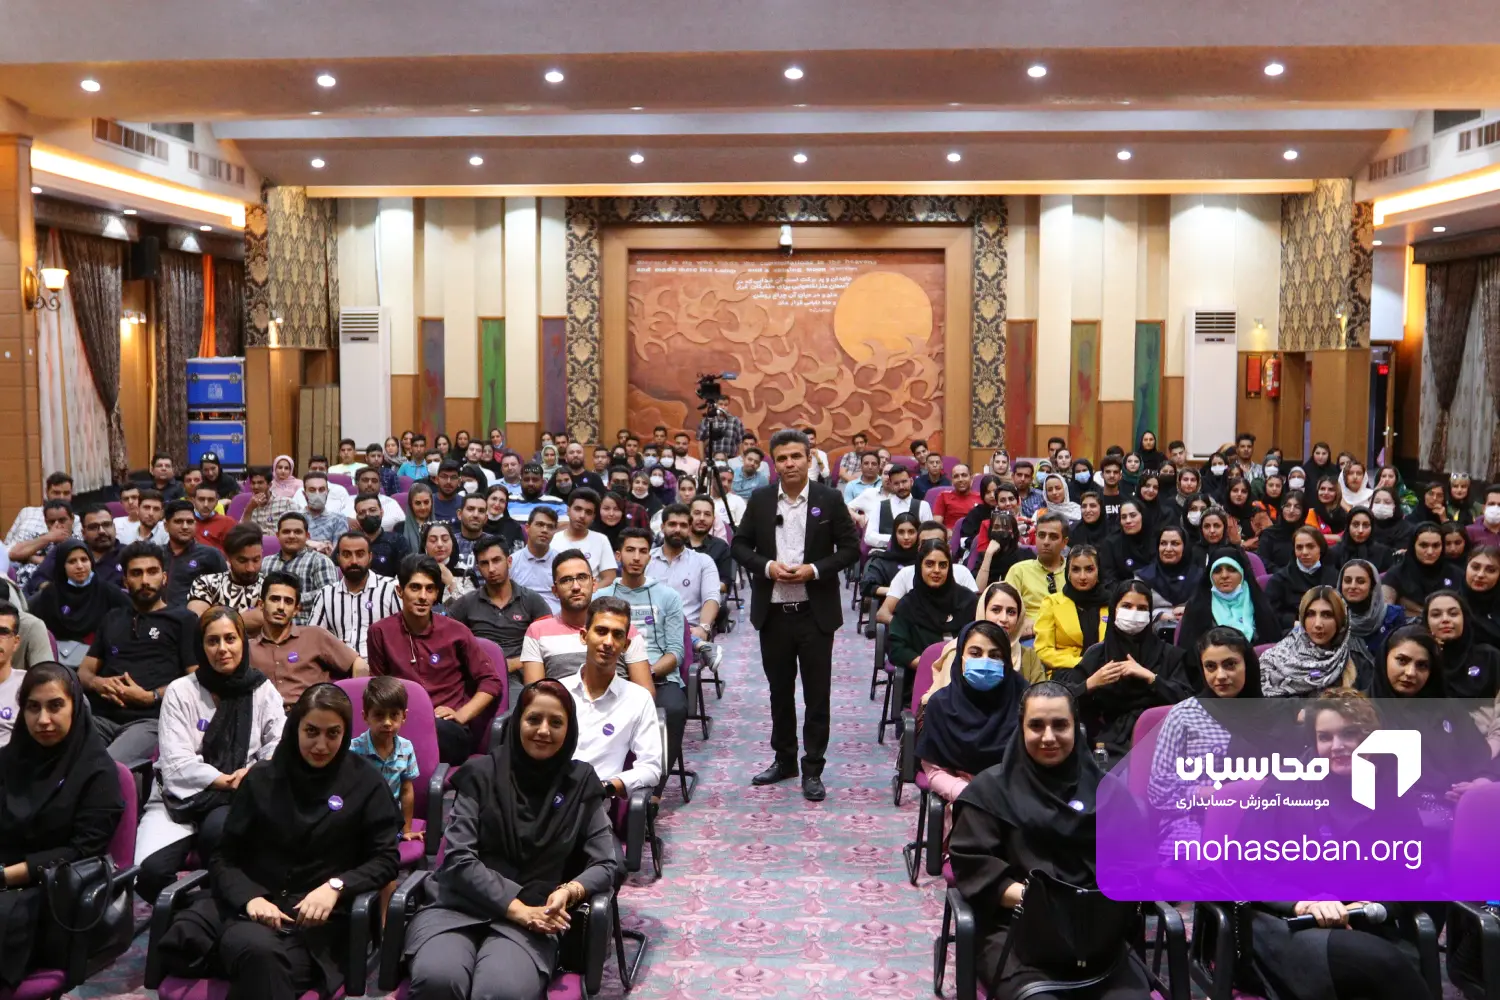 آموزشگاه حسابداری در اصفهان محاسبان